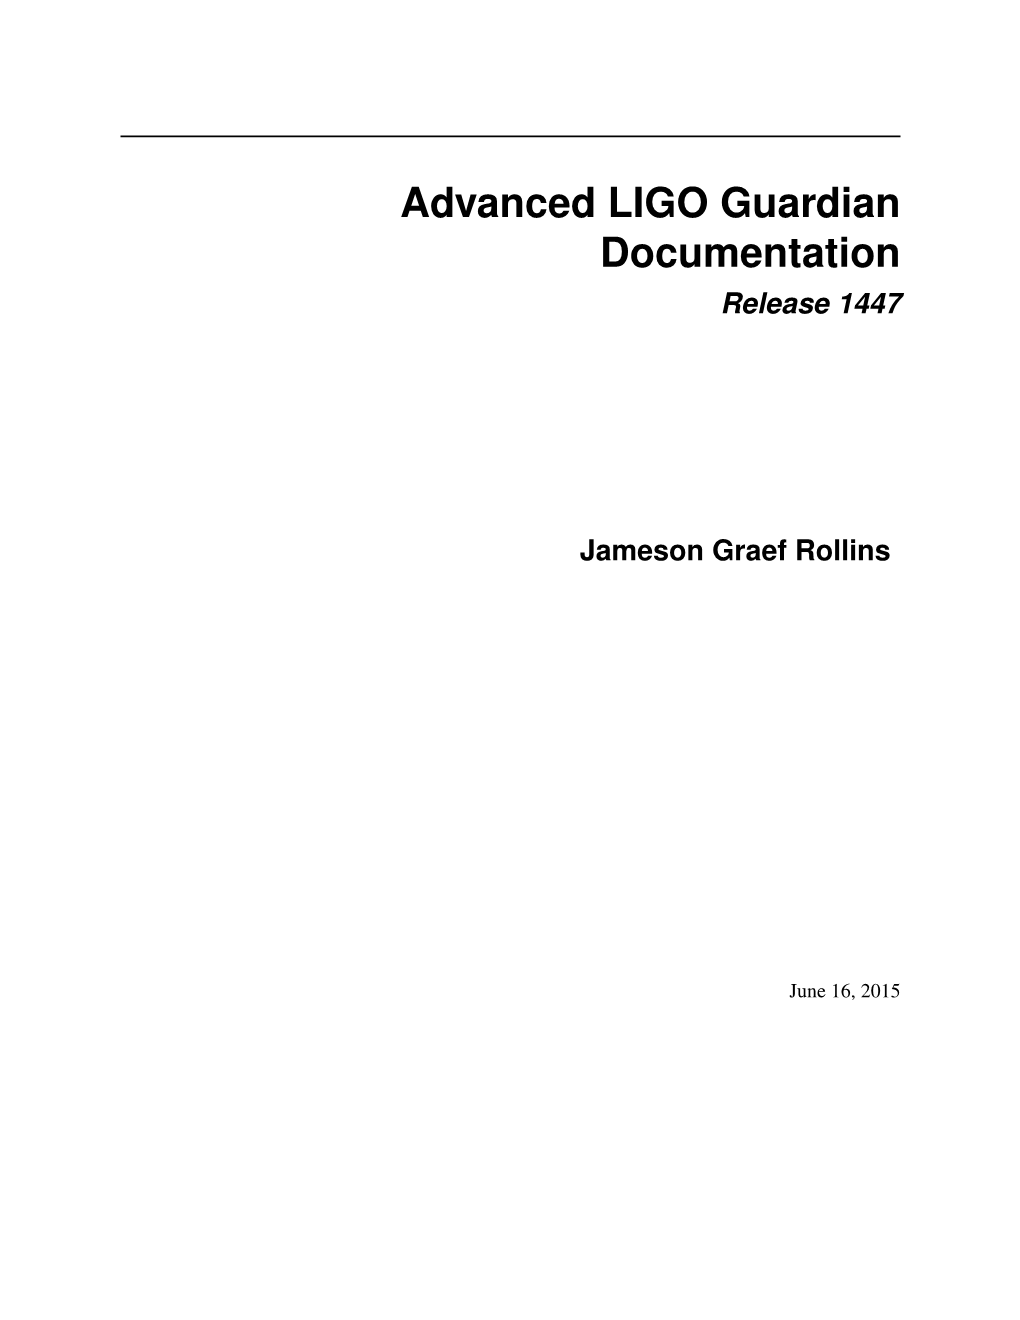 Advanced LIGO Guardian Documentation Release 1447